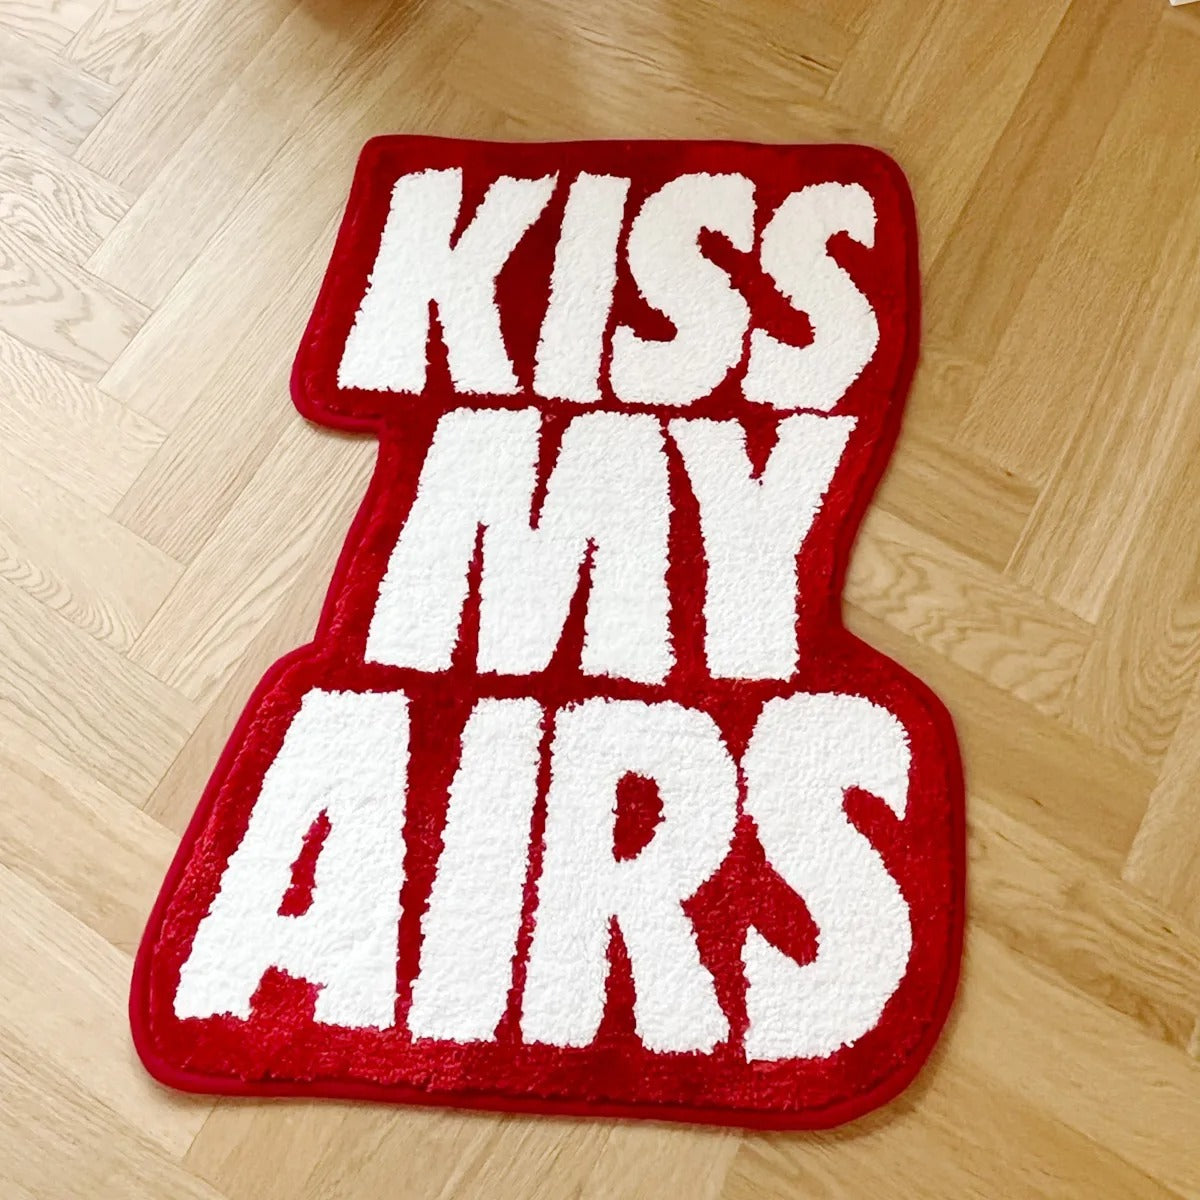 Kiss my Airs Teppich – Jordan Teppich